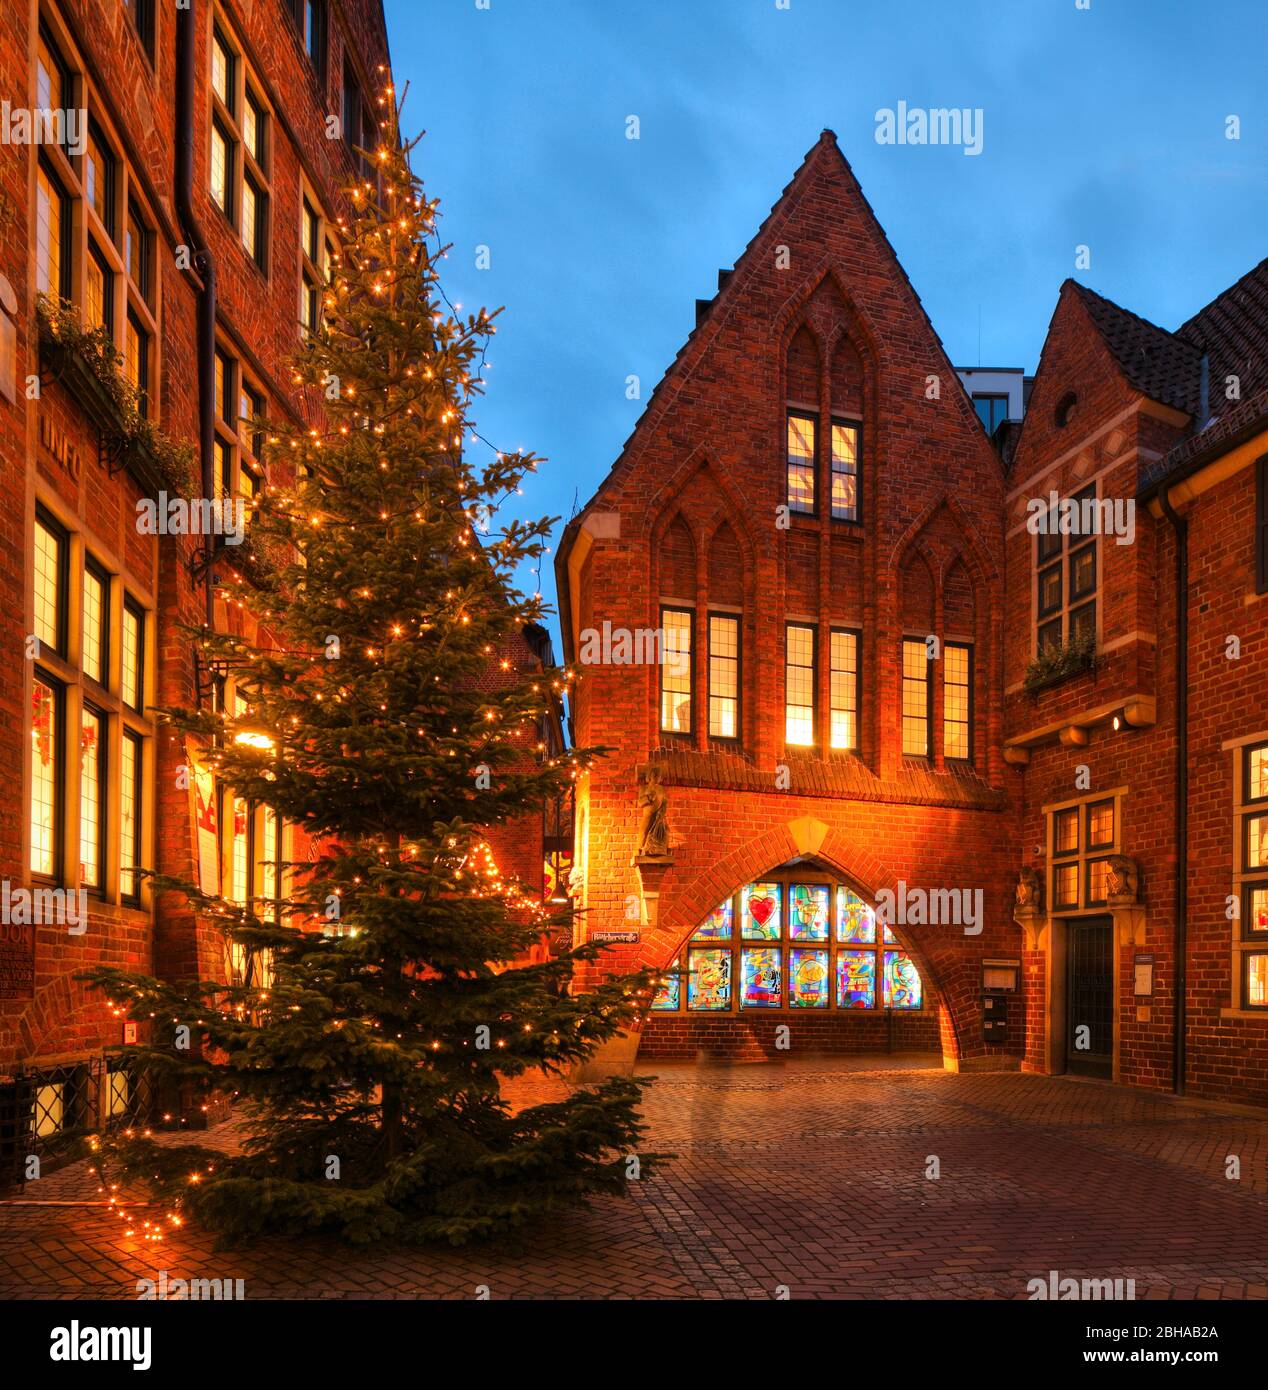 Weihnachtsbeleuchtung in der Böttcherstraße , Brema, Deutschland, Europa Foto Stock